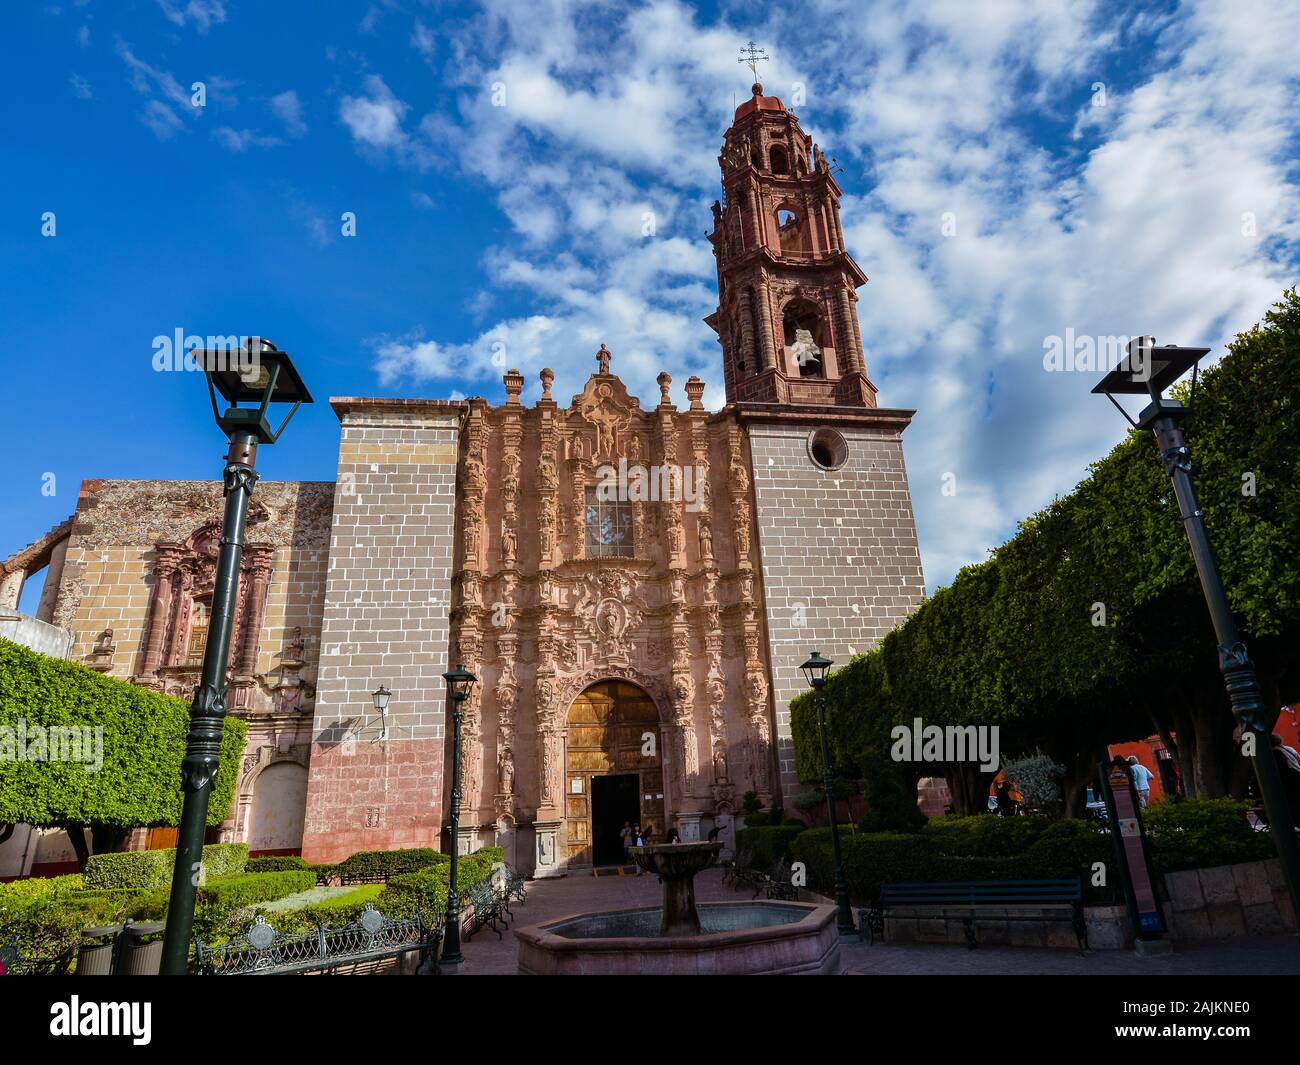 San Miguel de Allende, Mexique - 22 octobre 2019 : l'église de la colonie espagnole de San Francisco, San Miguel de Allende, Mexique Banque D'Images